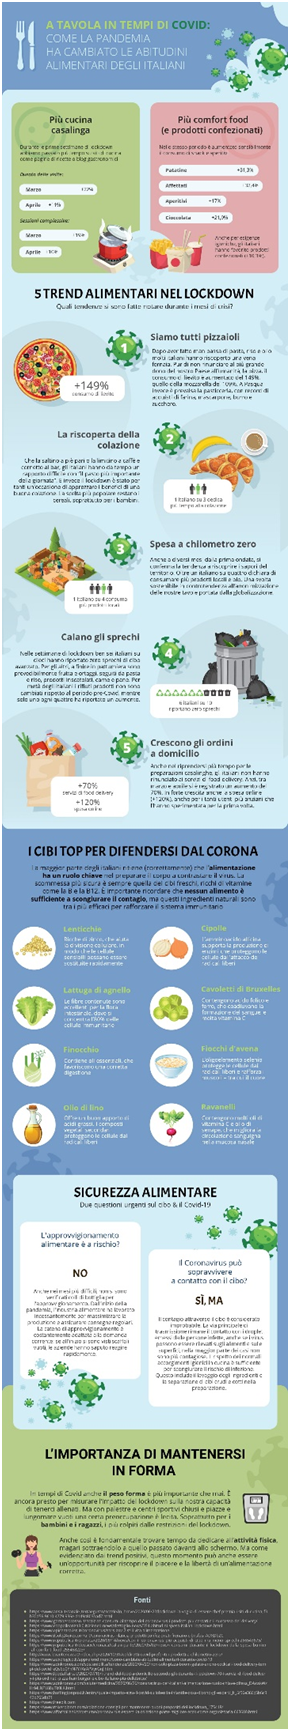 infografica di imiglioricasinoonline.net sull’alimentazione dopo il covid